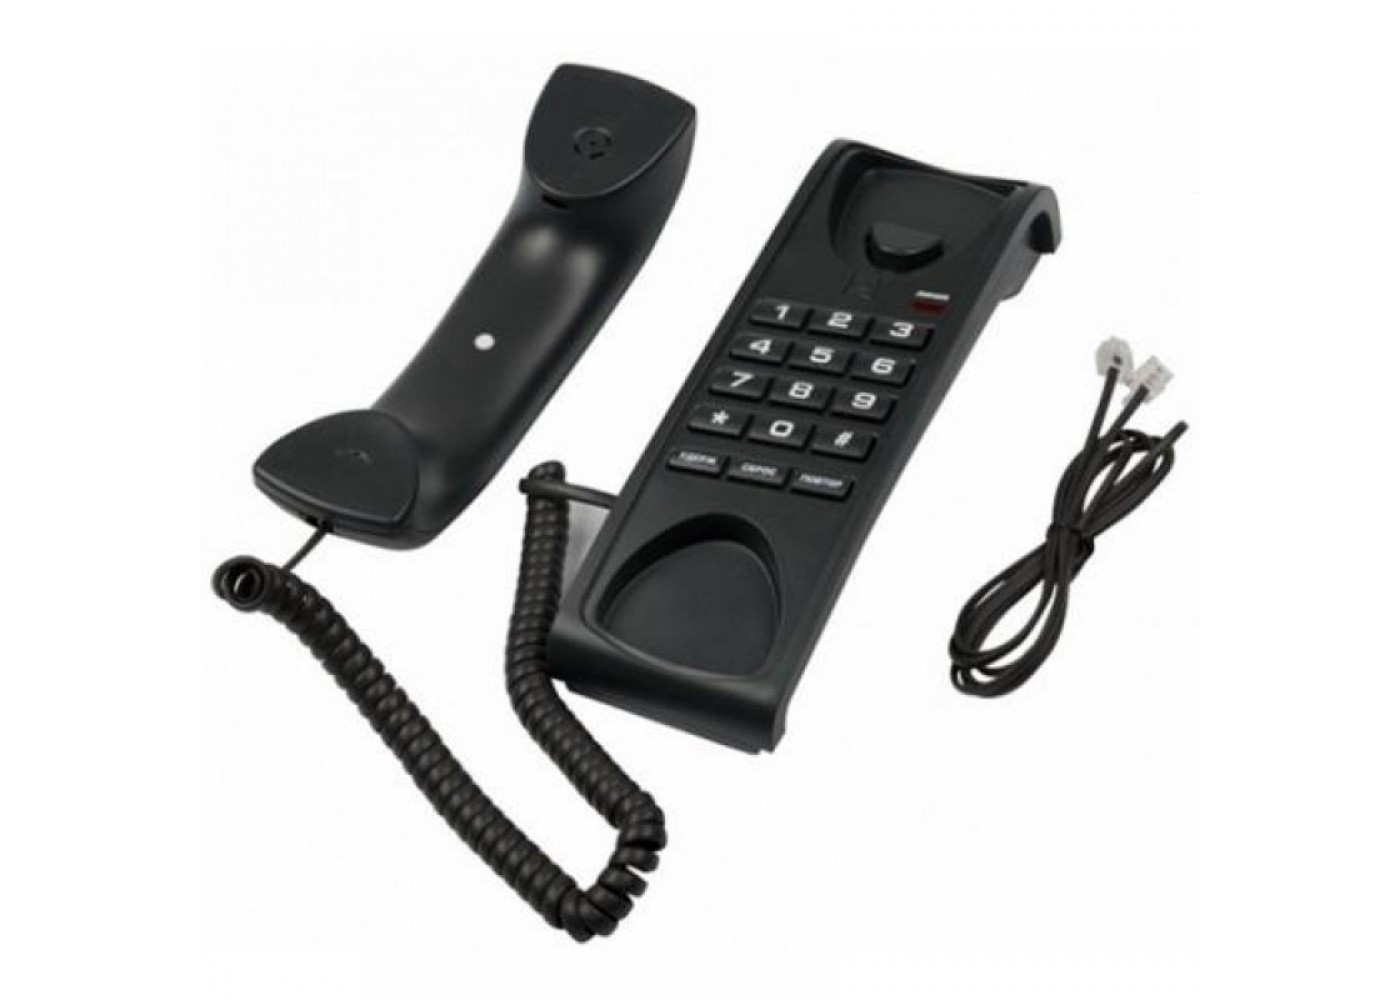 Телефон RITMIX RT-007 регулятор громкости звонка